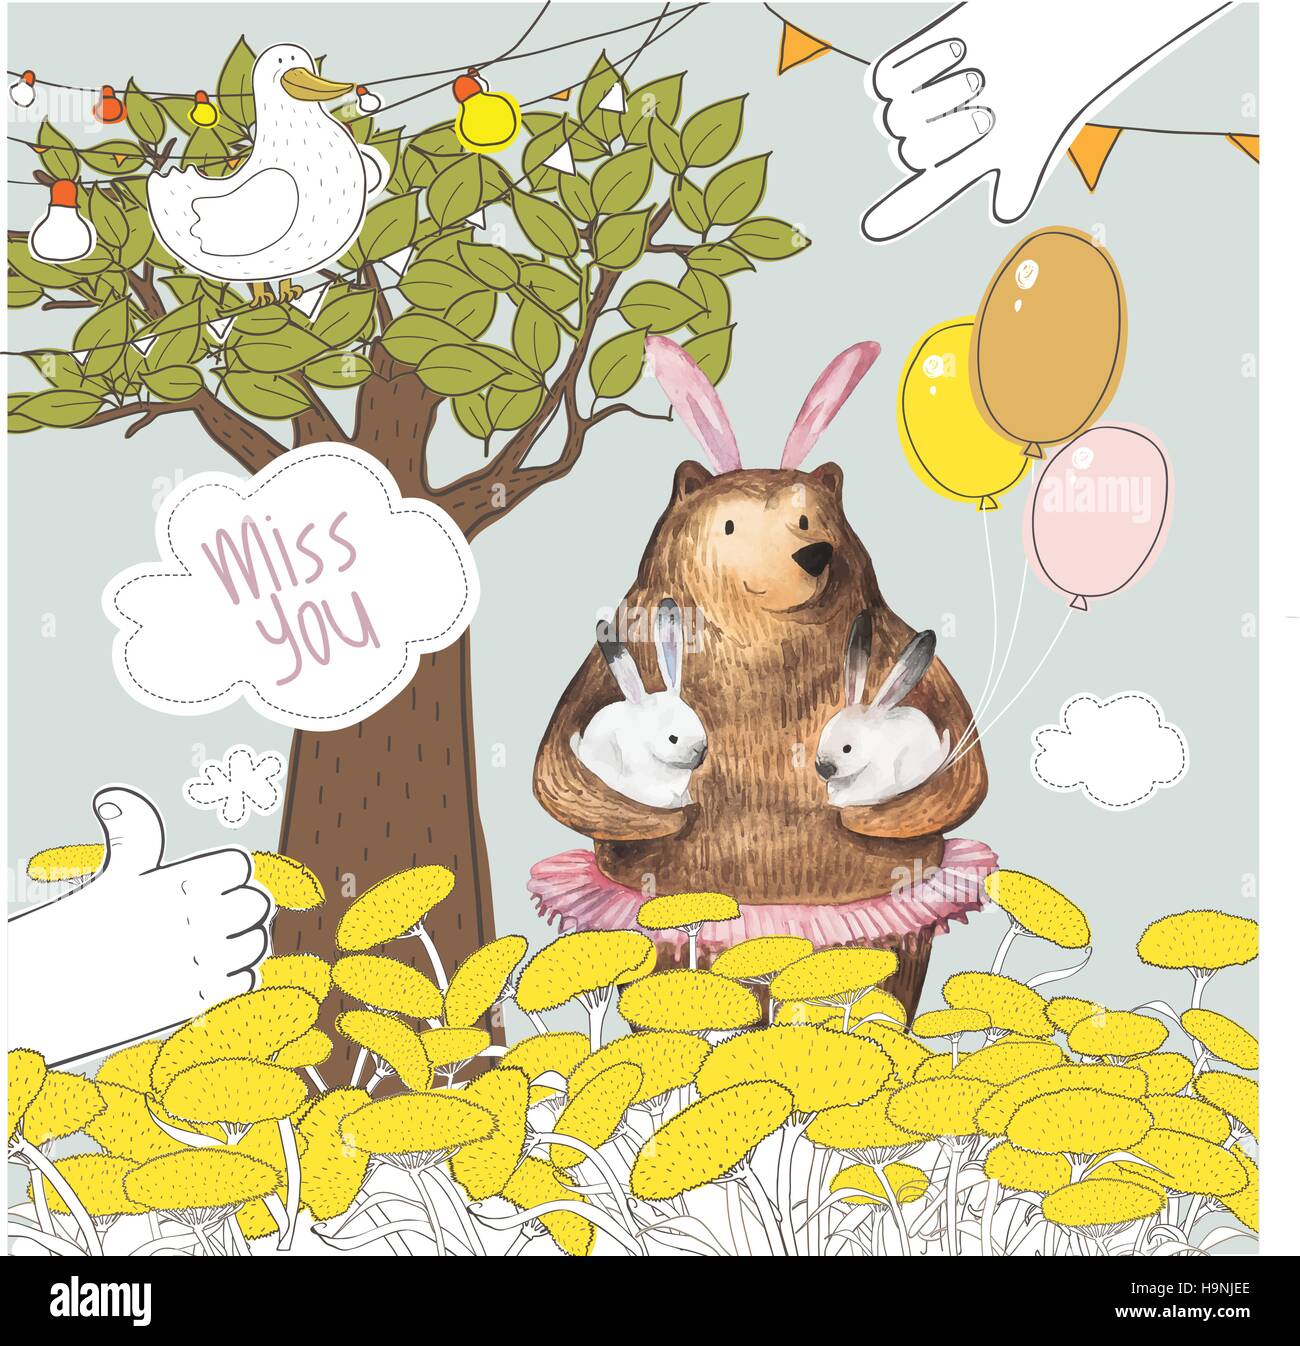 Grazioso uccello e Cartoon carino Orso con i palloncini tenendo due piccoli coniglietti. Miss you card design. Disegnato a mano elementi ad acquerello. Illustrazione Vettoriale